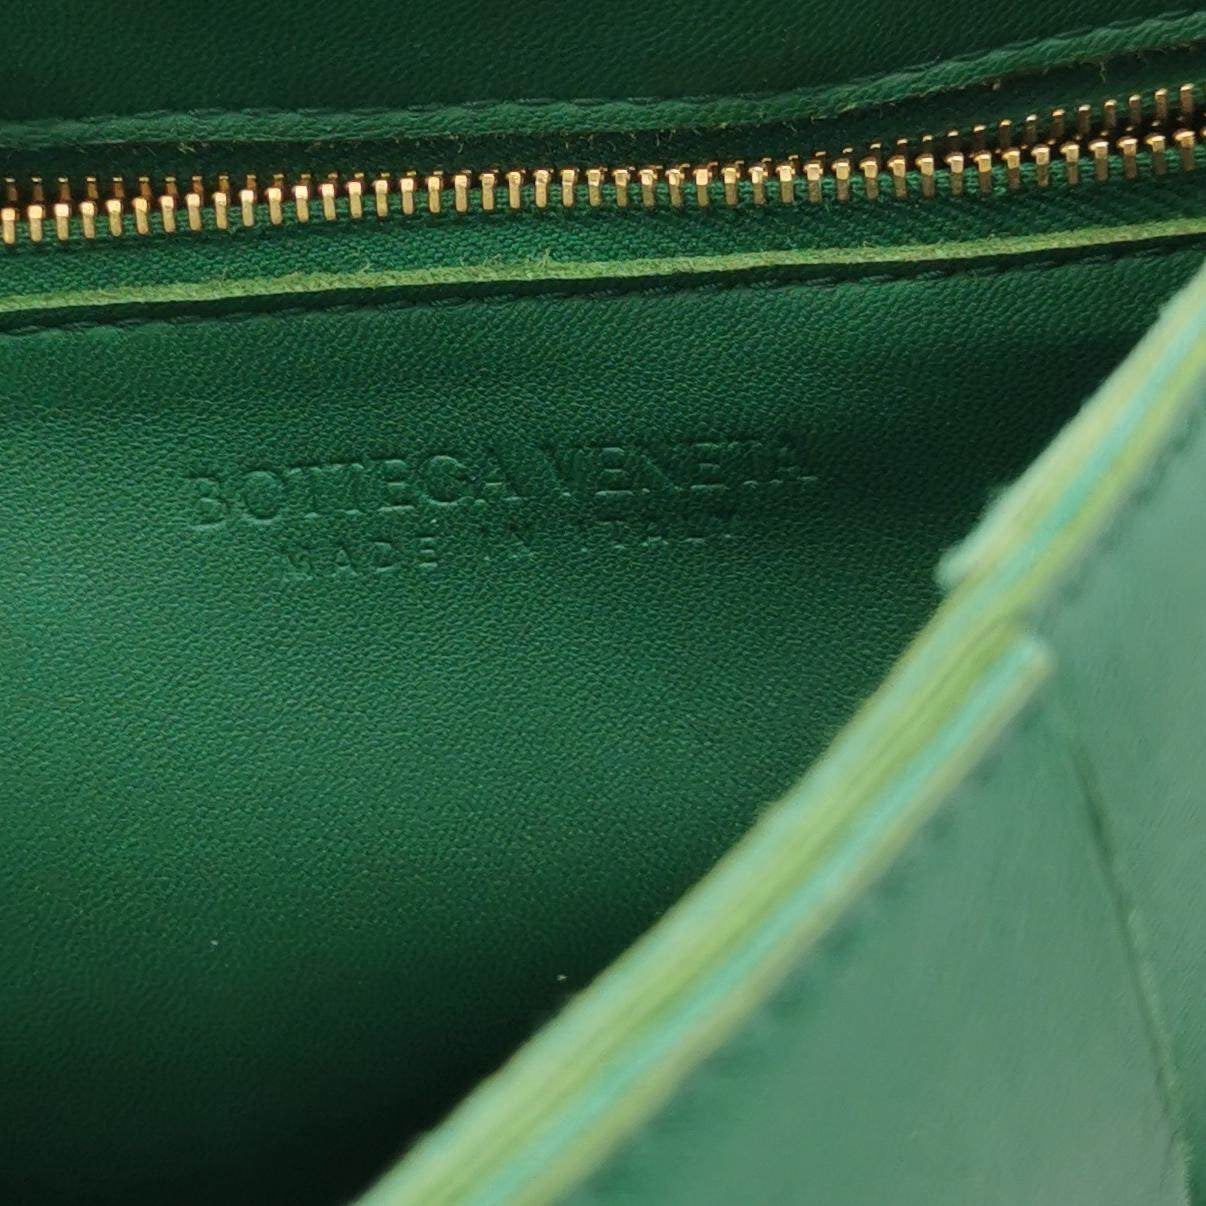 Bottega Veneta Cassette Green Leather Crossbody Bag